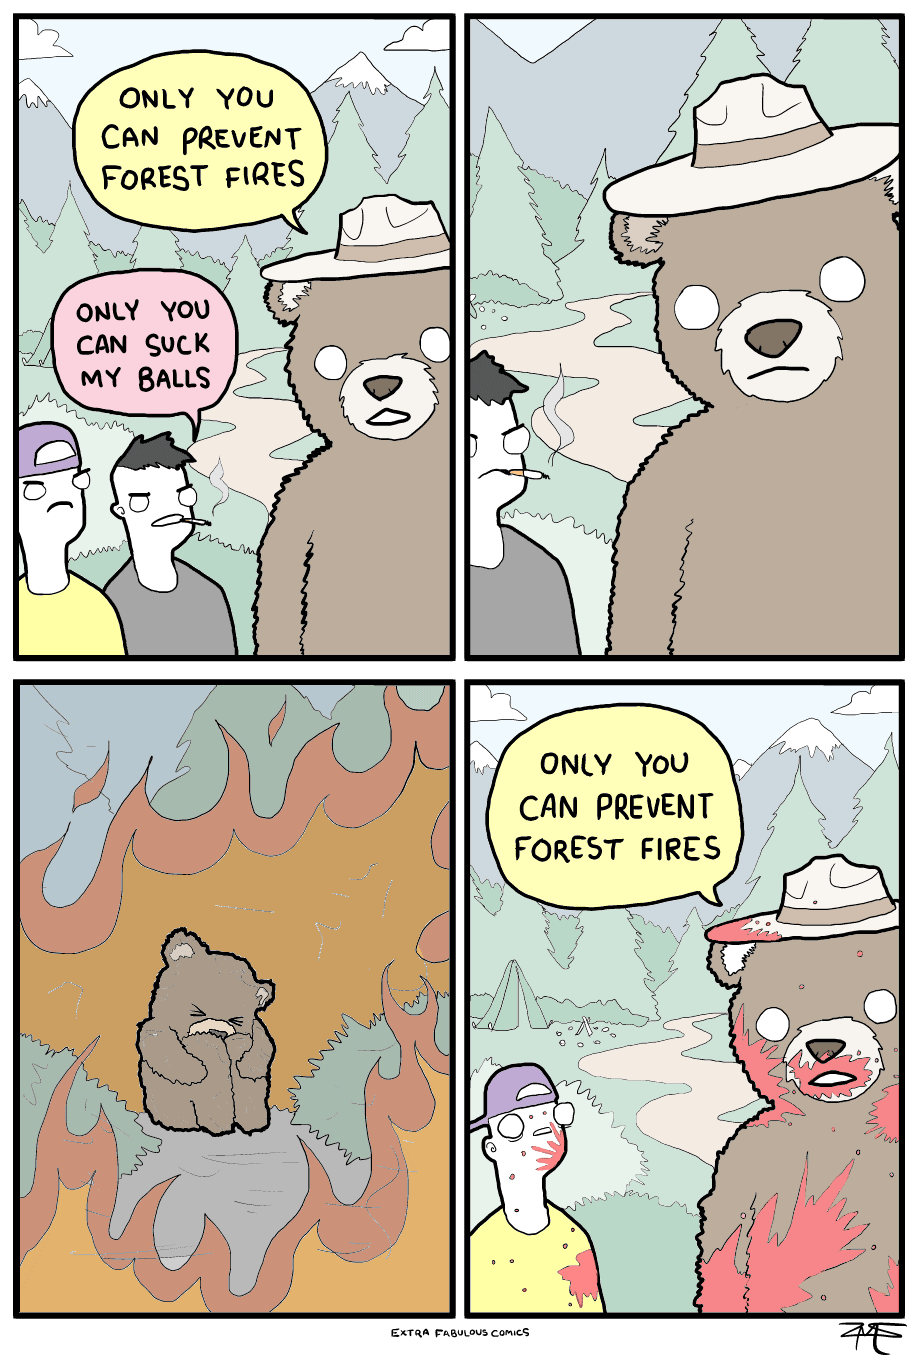 Les ours, ils vous prennent au mot.